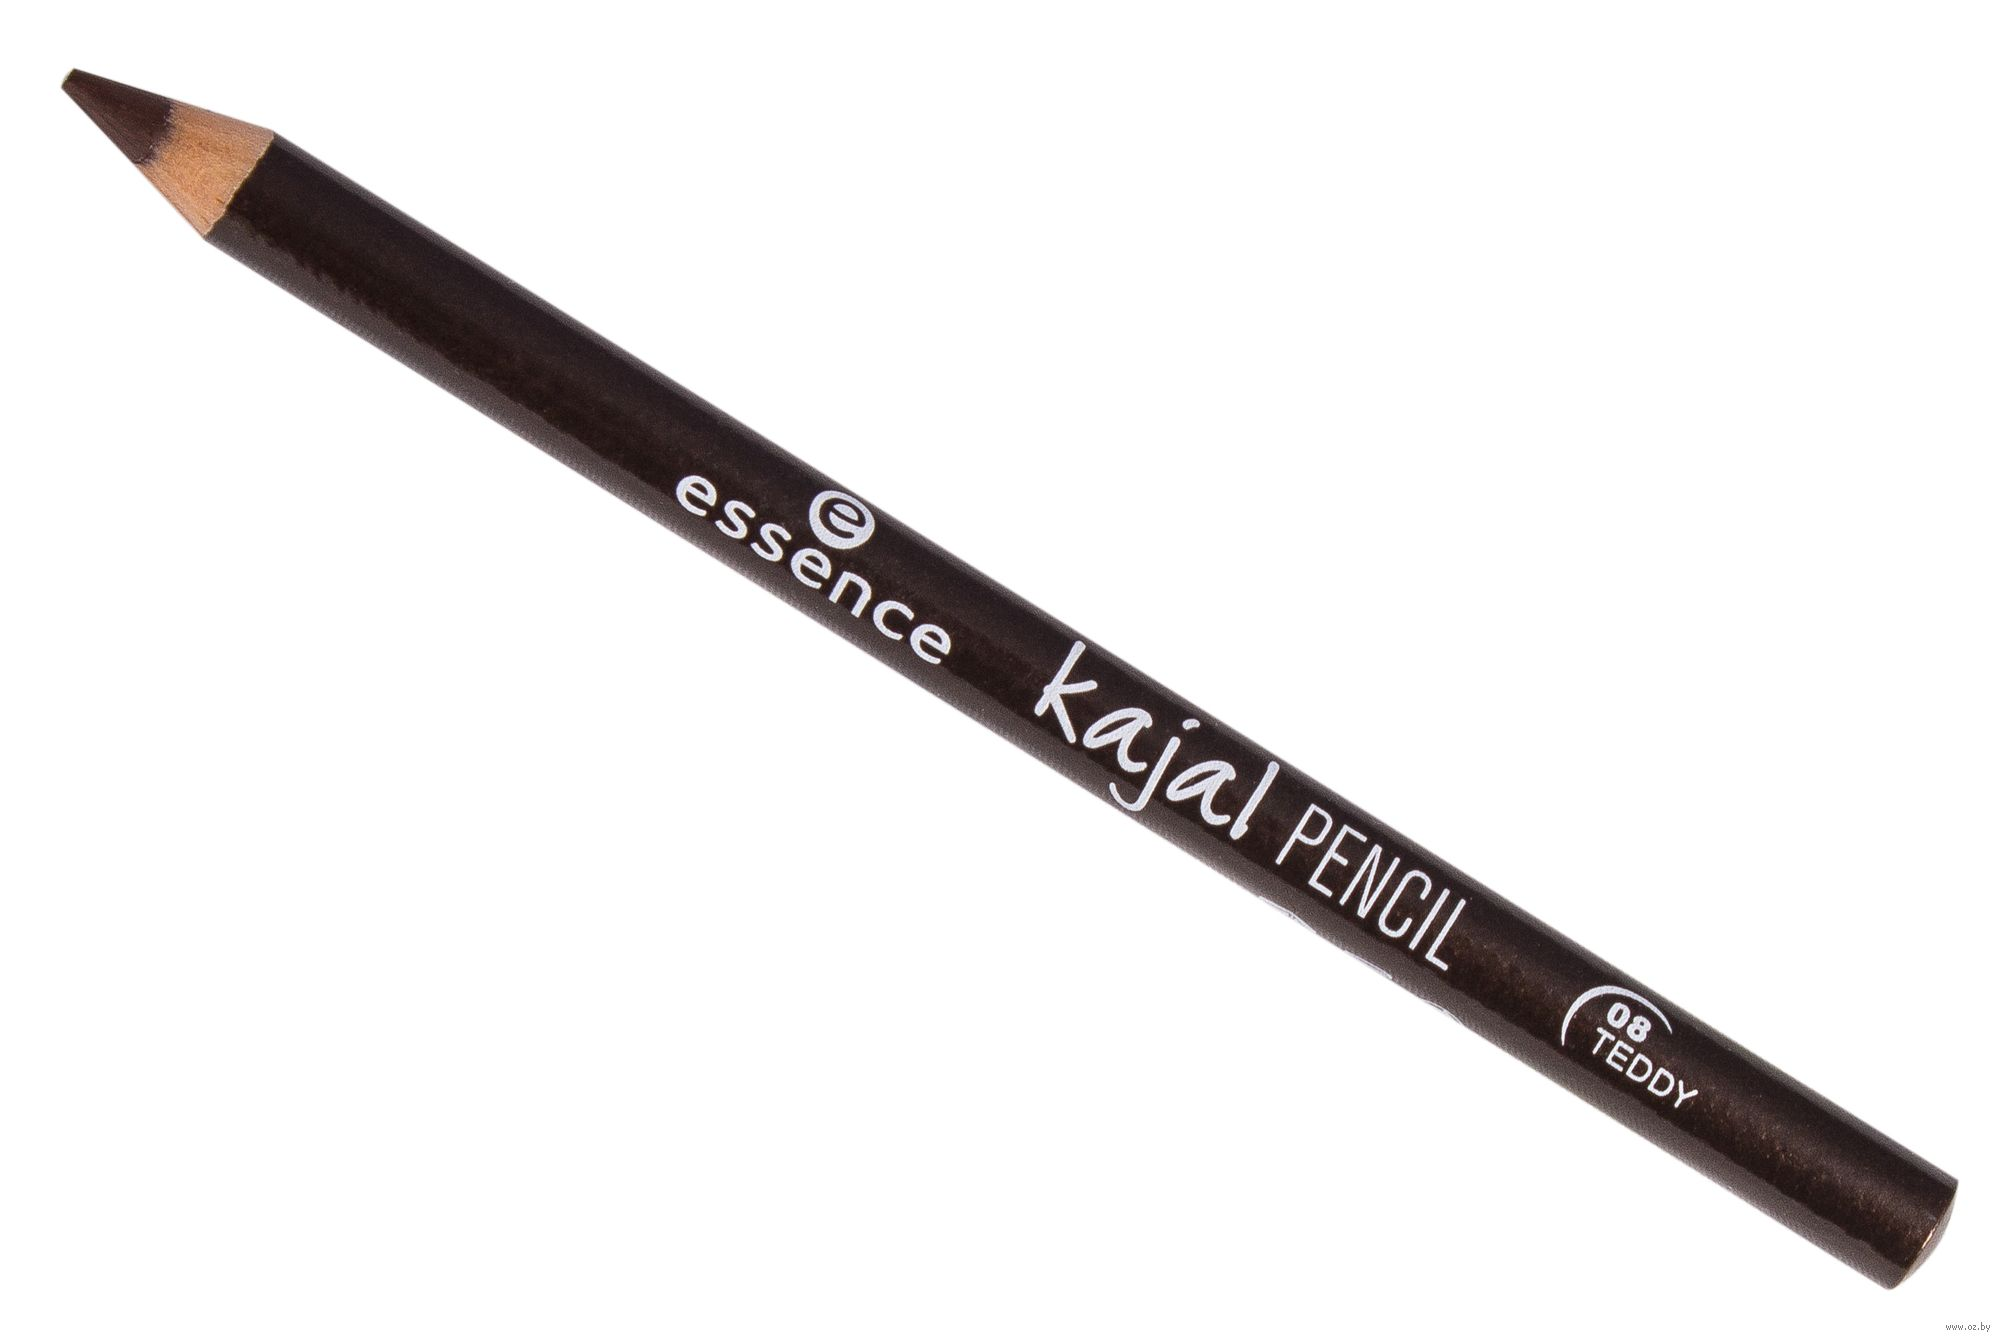 Карандаш каял. Essence Kajal Pencil 08. Essence, Kajal — карандаш для глаз (коричневый т.08). Карандаш для глаз `Essence` Kajal тон 08. Essence карандаш для глаз Kajal Pencil.